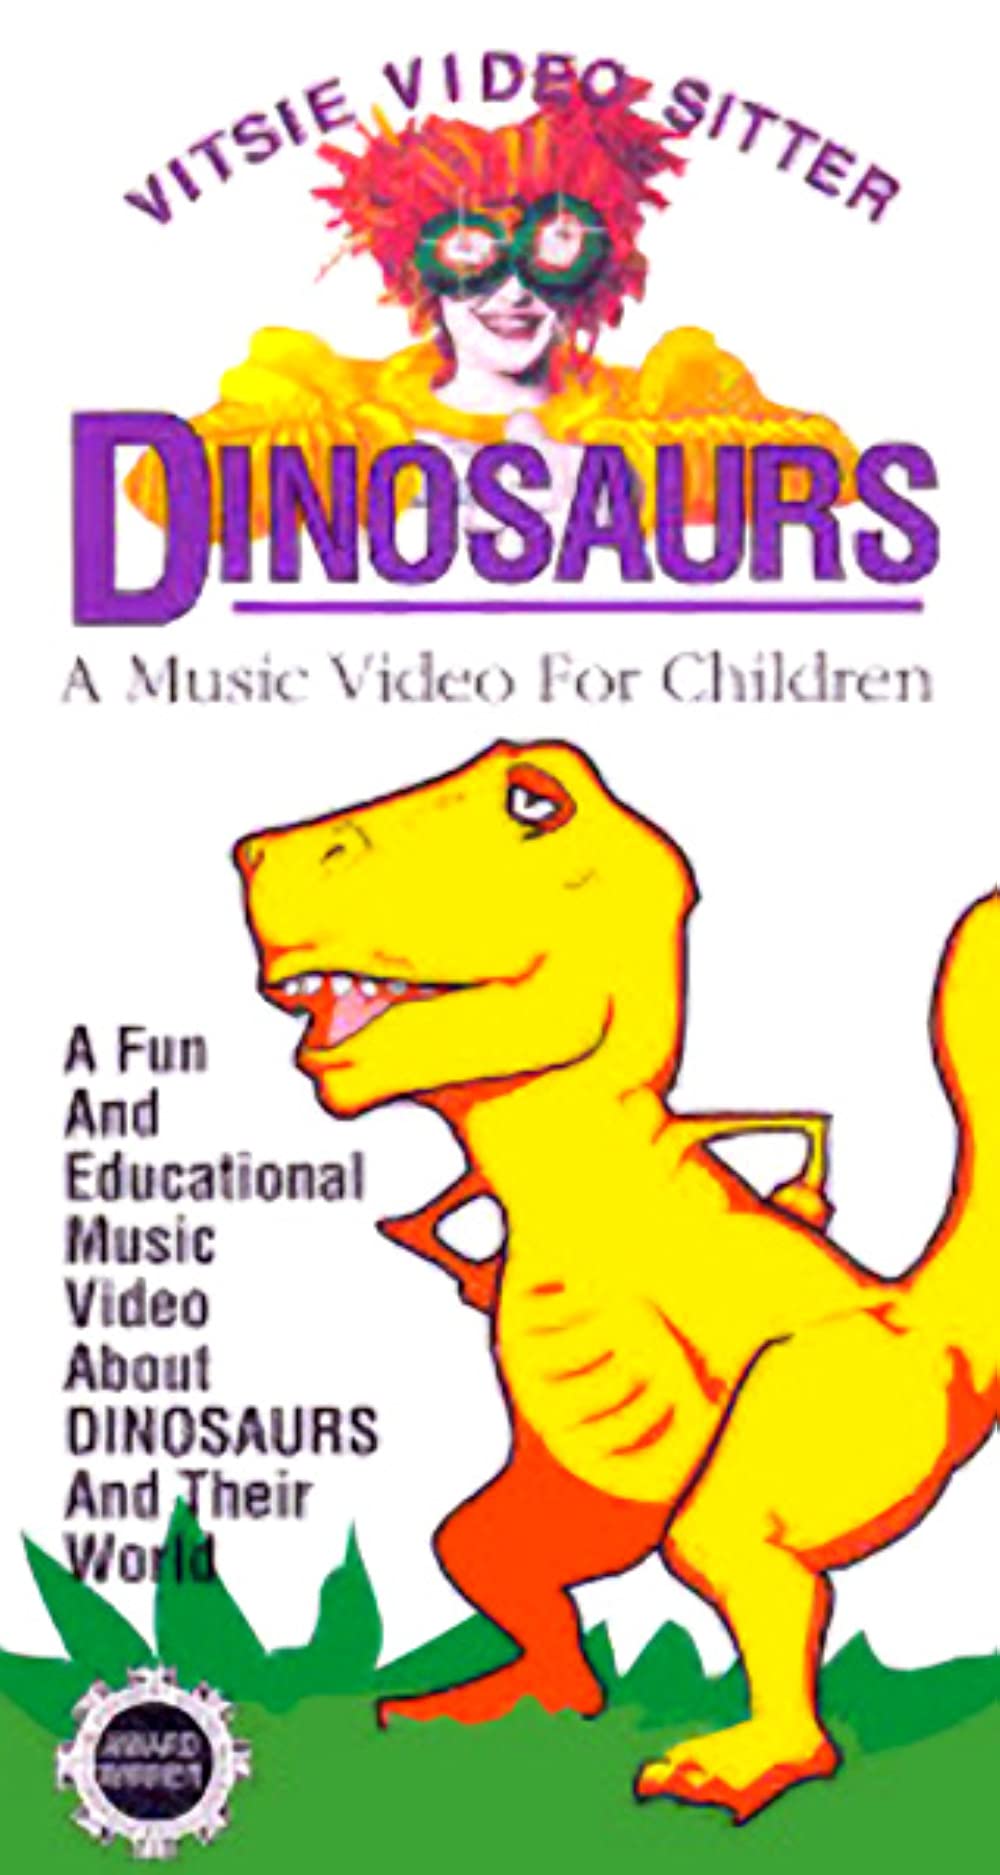 Vitsie Video Sitter: Dinosaurs (1989)